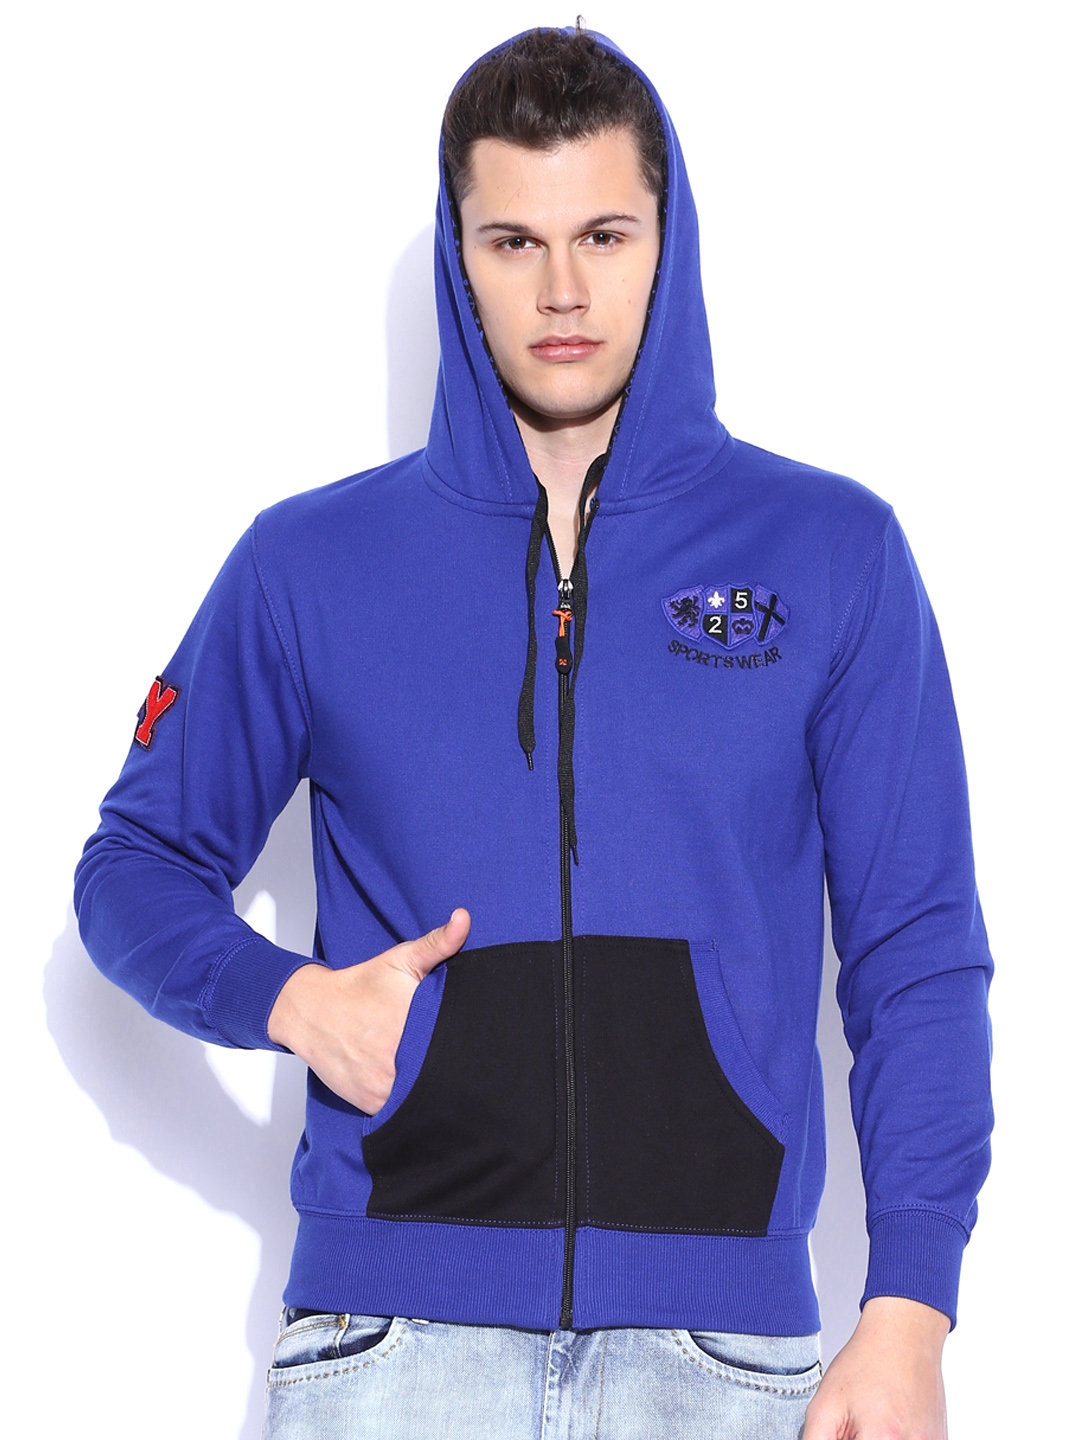 Buy Sports52 Wear Blue Hooded Sweatshirt - Sweatshirts for Men 1076619 ...